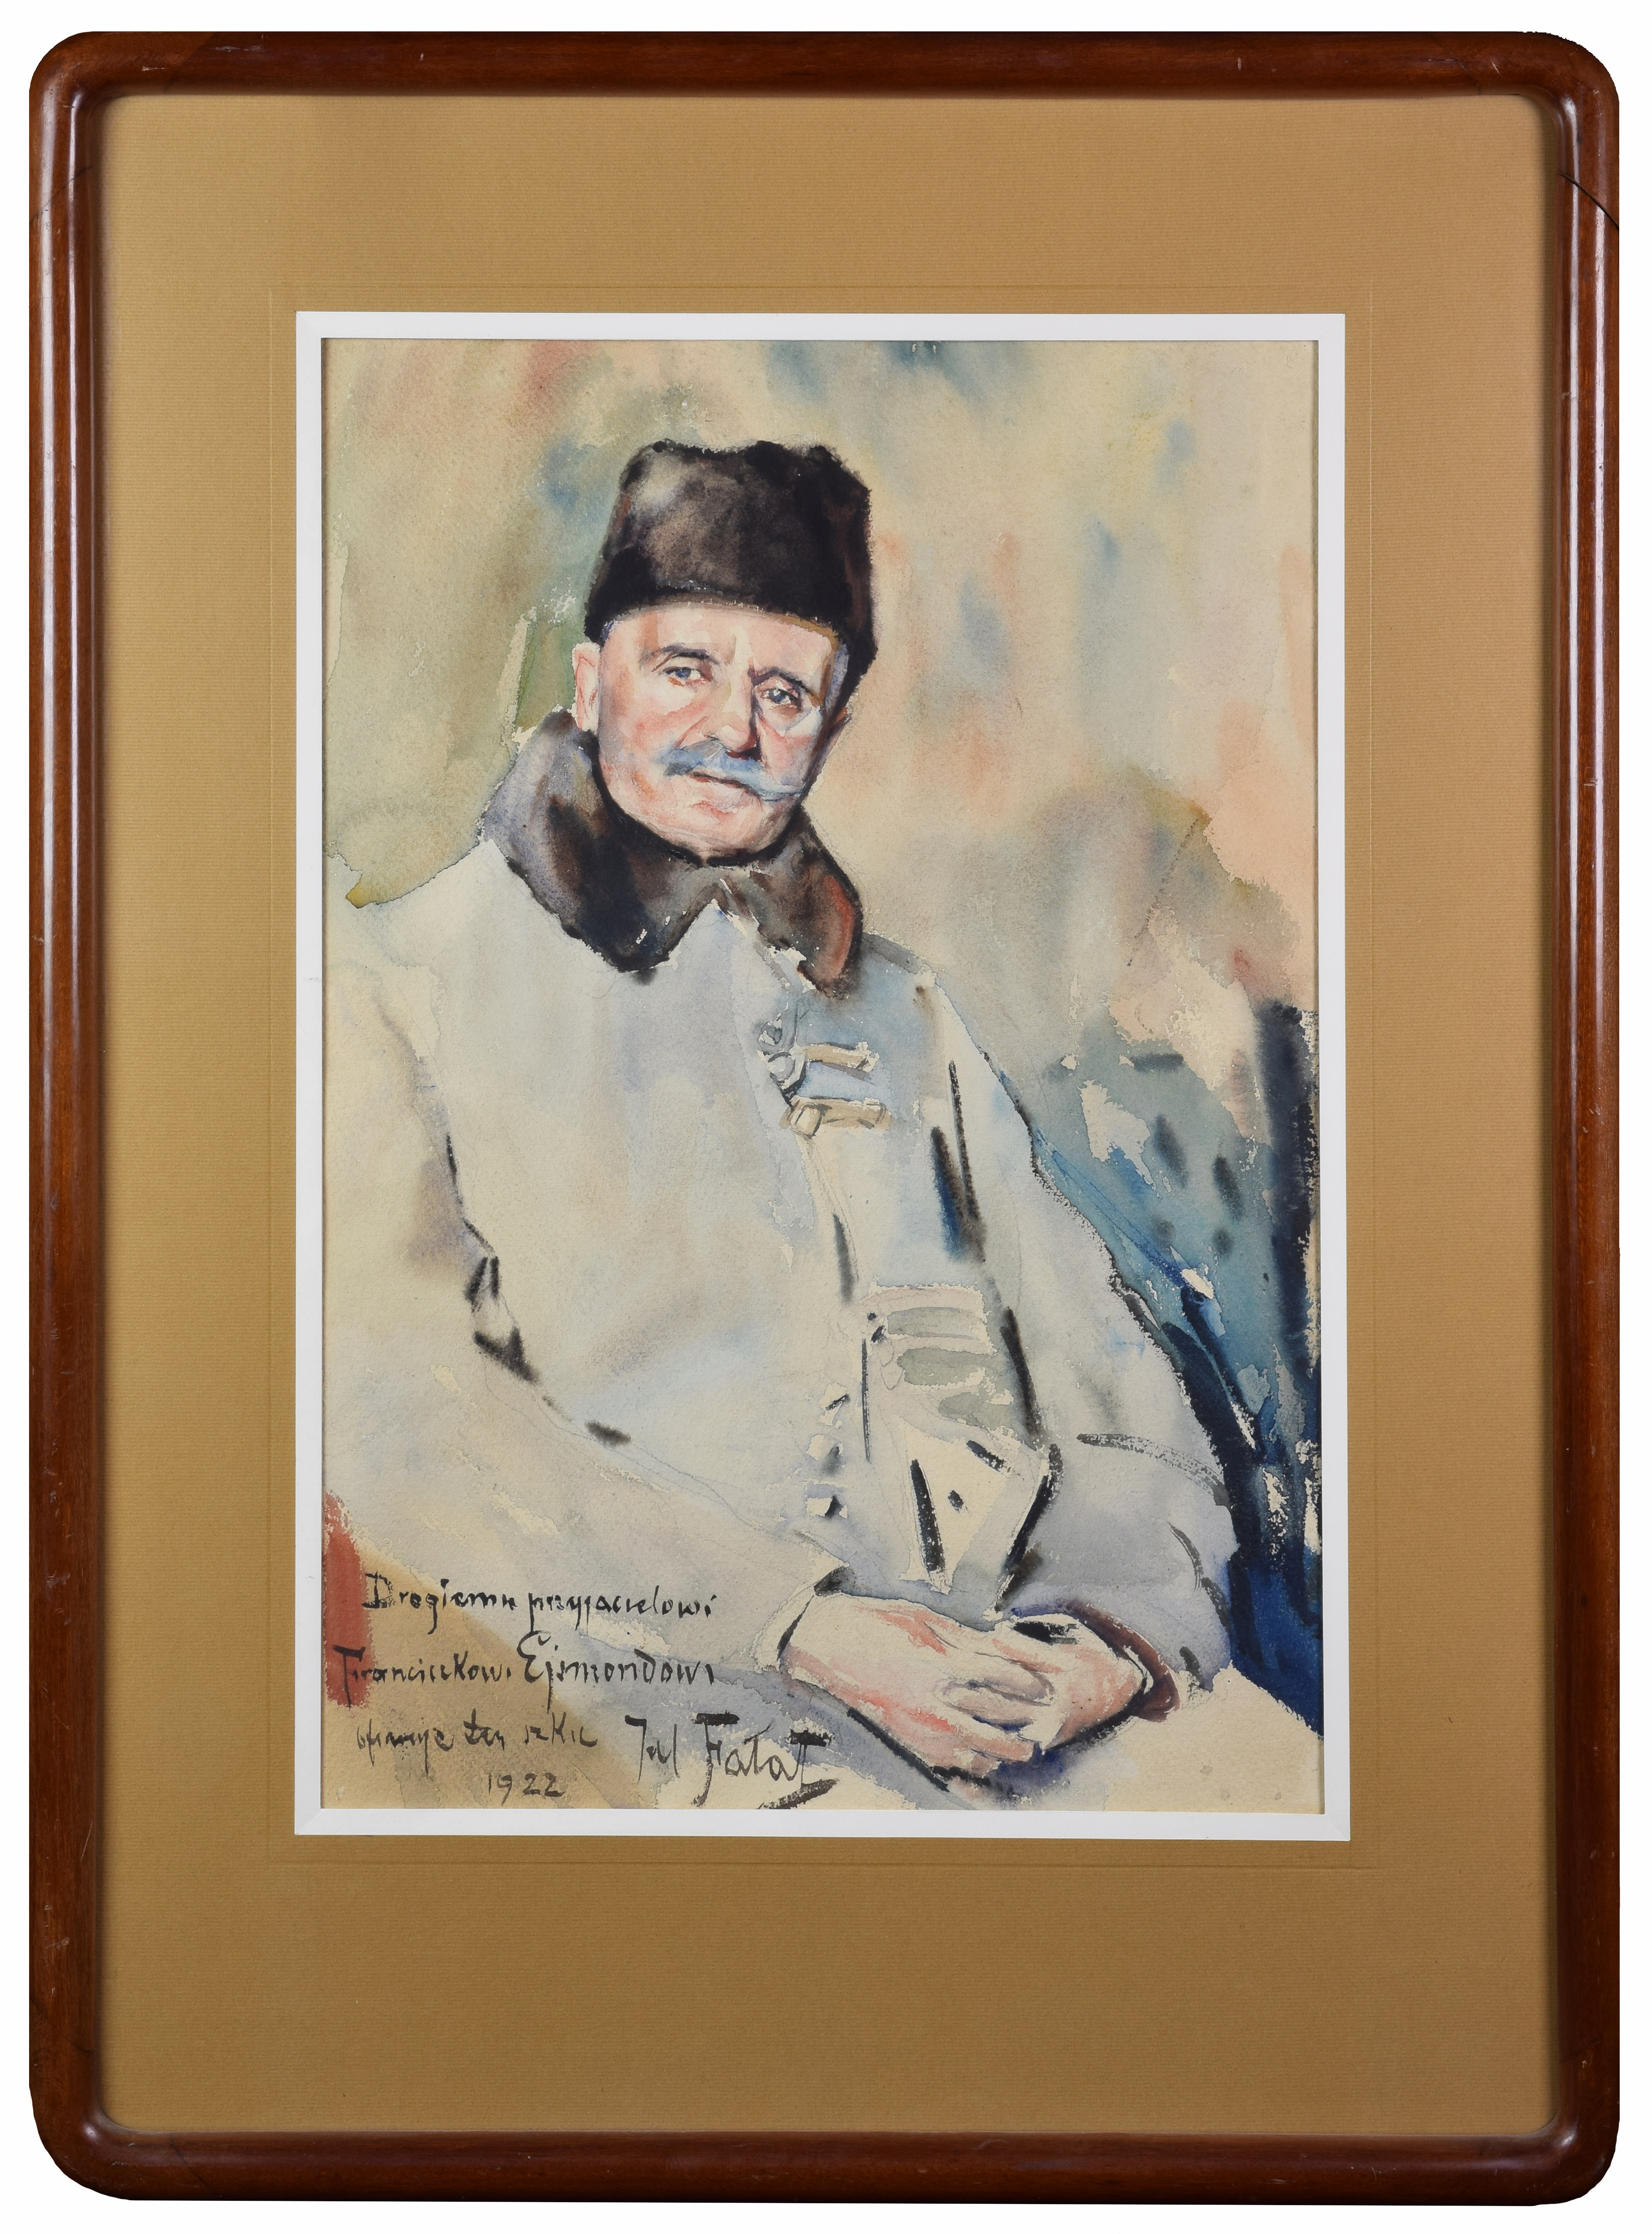 Portret malarza Franciszka Ejsmonda,1922